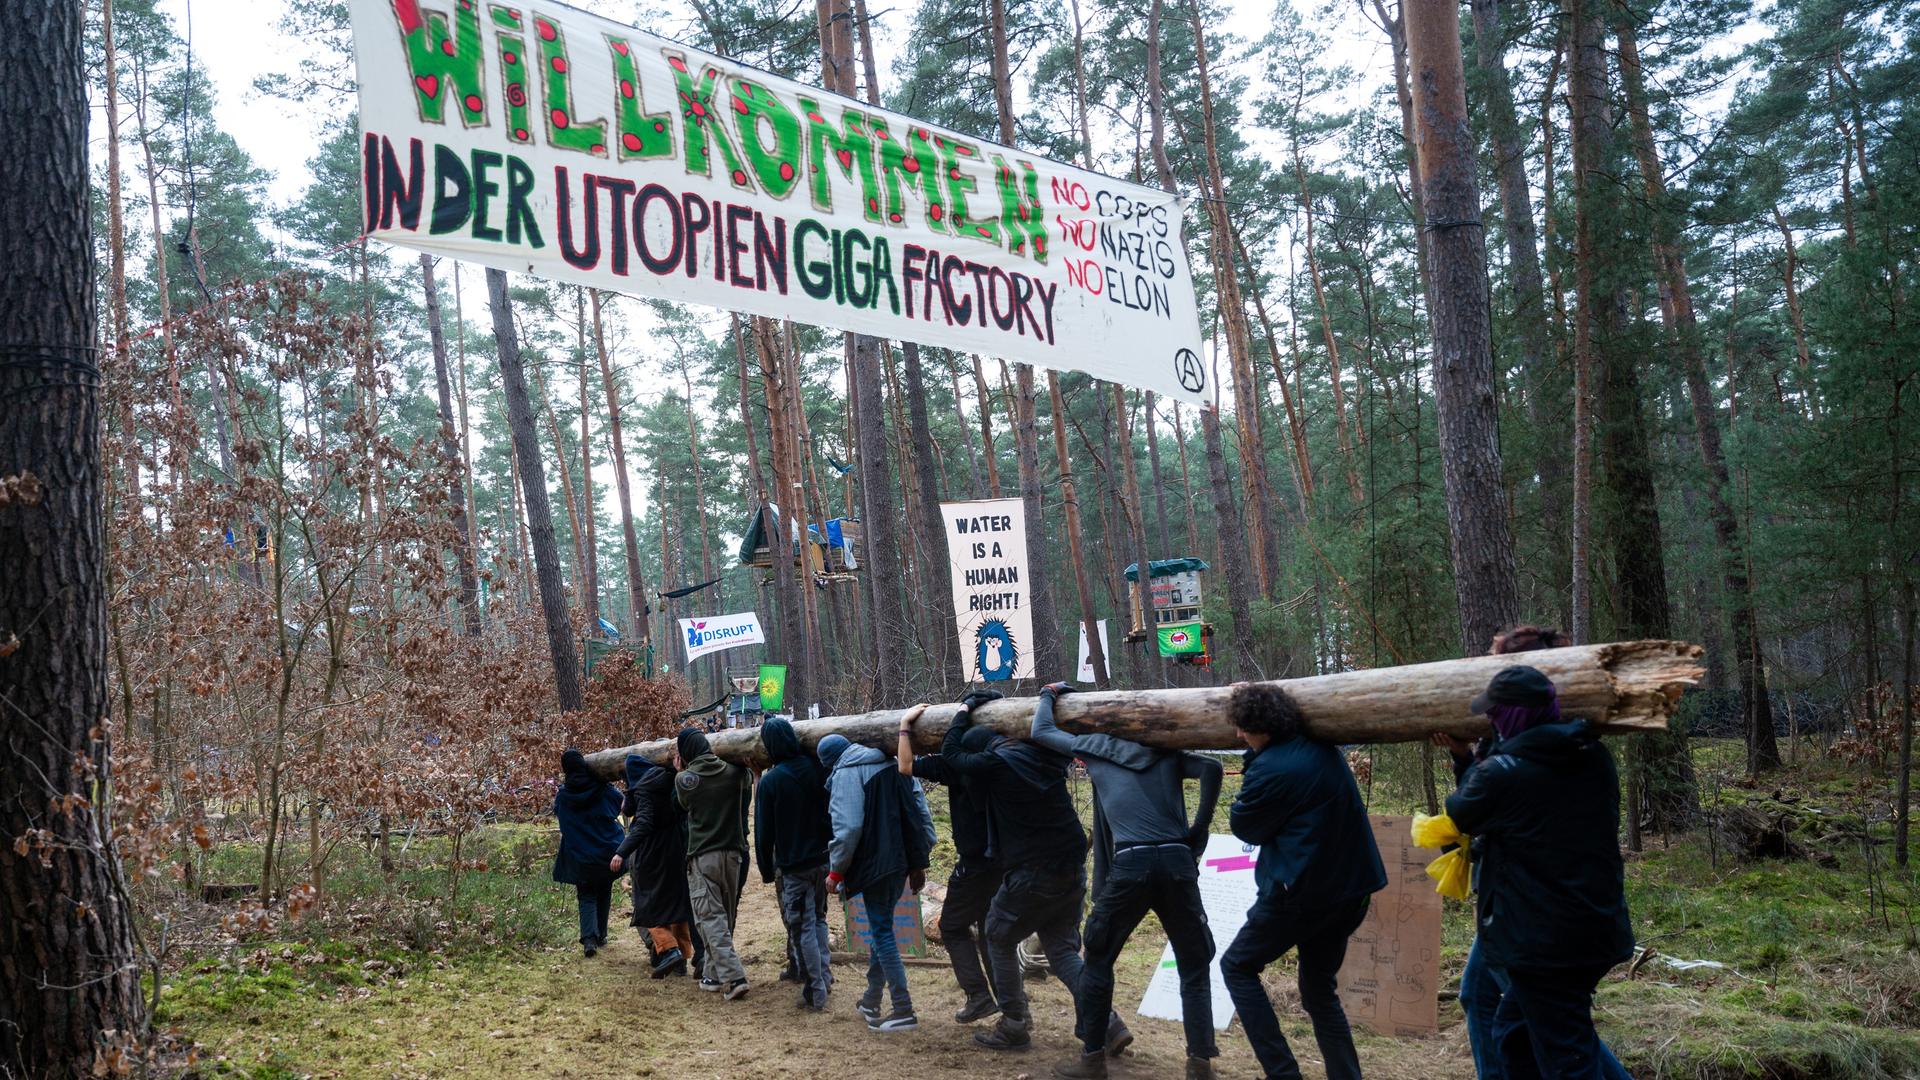 Aktivisten tragen in einem Protestcamp einen Baumstamm im Wald. Das Protestcamp richtet sich gegen eine geplante Erweiterung des Tesla-Werksgeländes in einem Waldgebiet nahe der Fabrik.